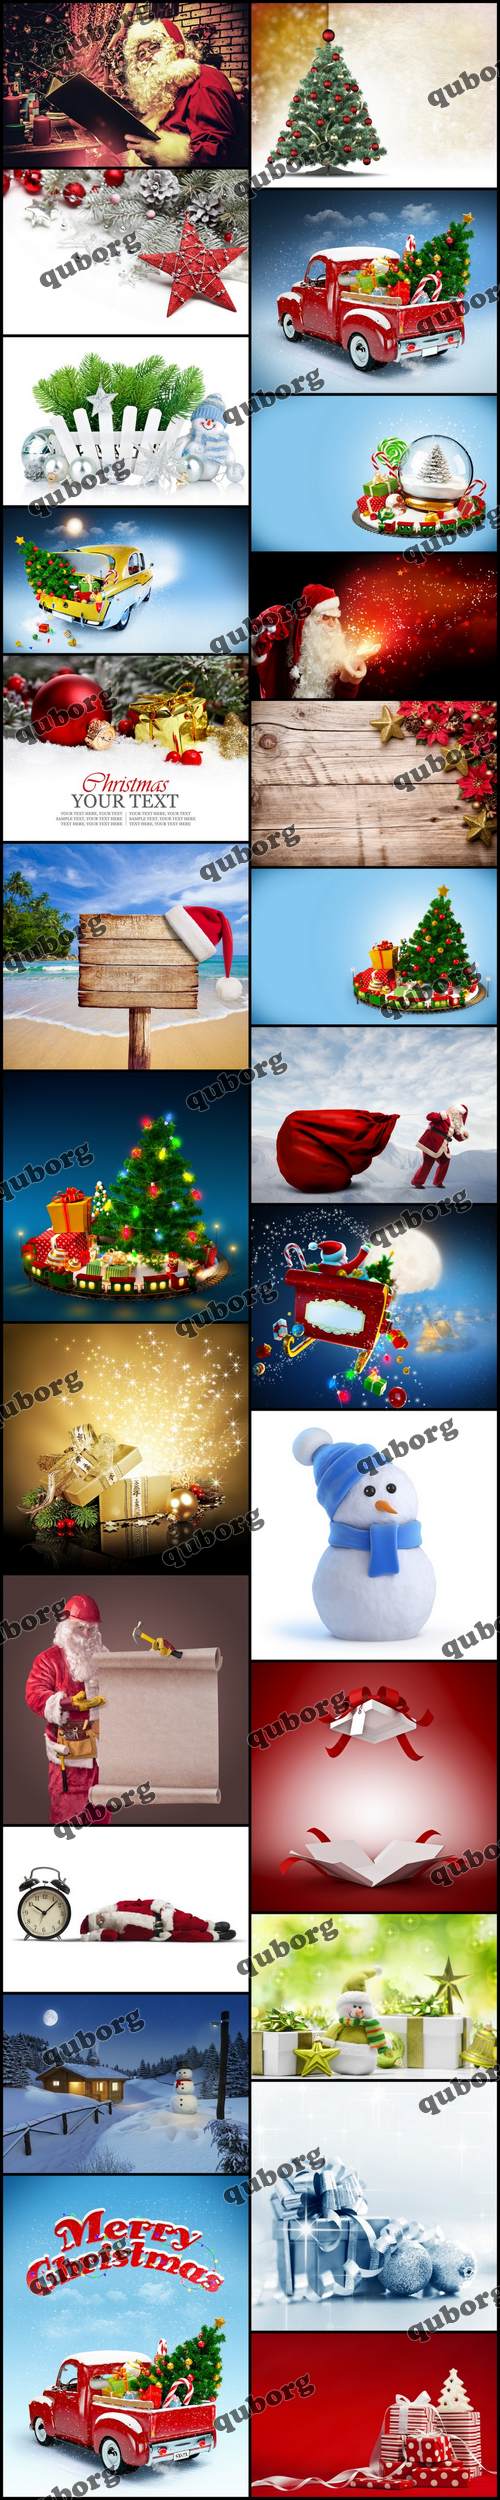 Stock Photos - Merry Christmas Collection